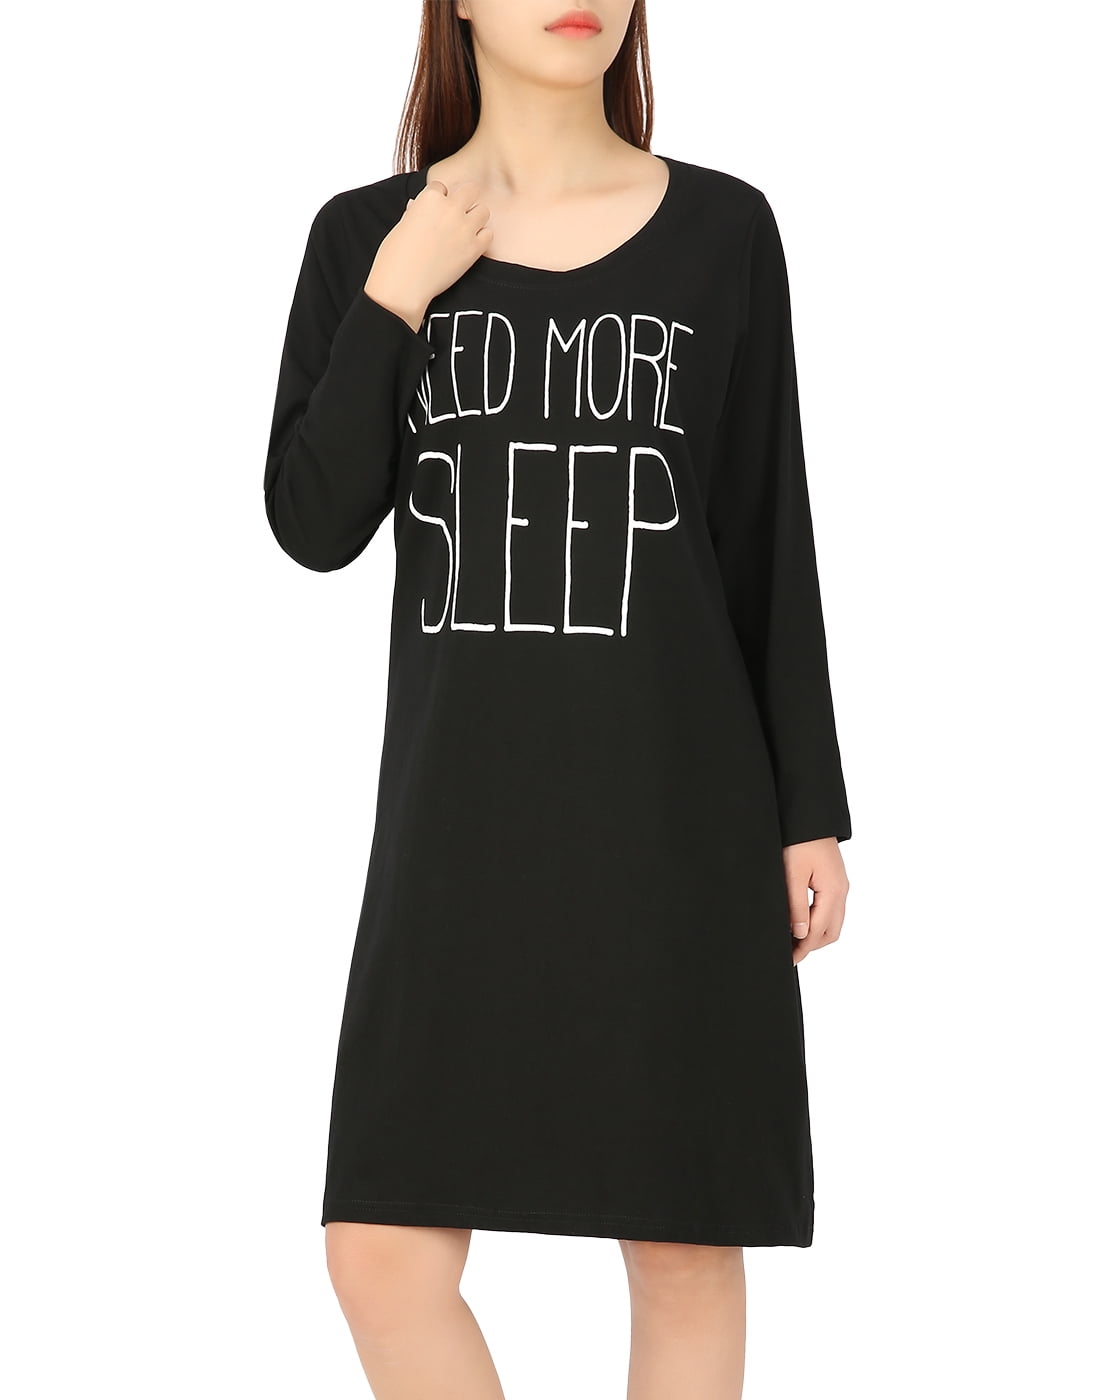 long sleep shirt dress